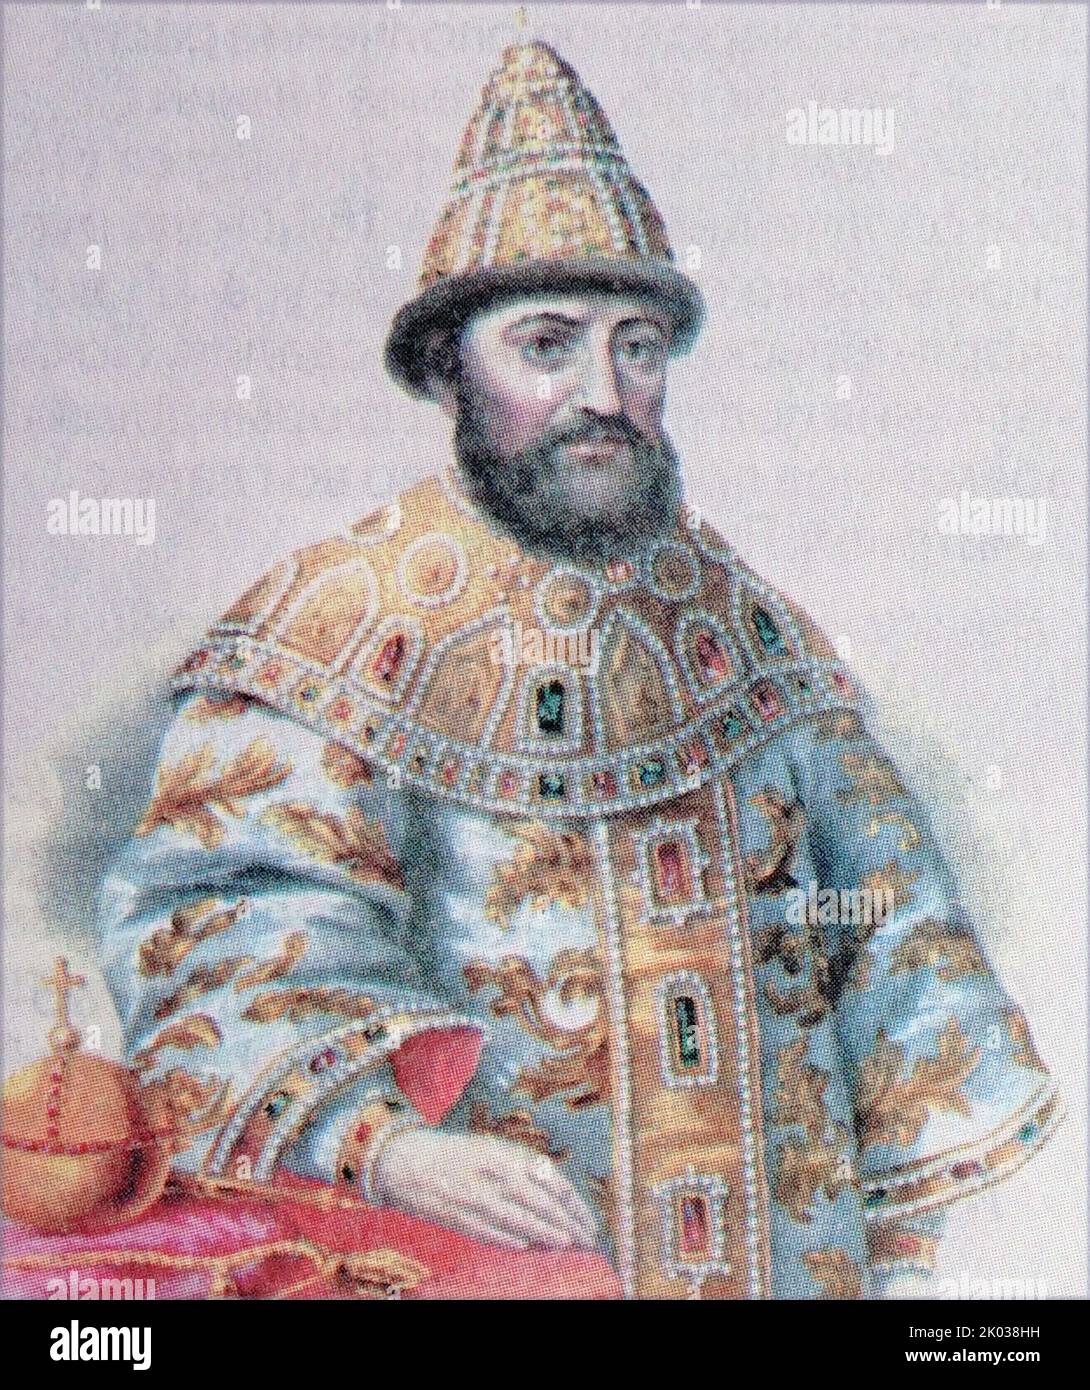 Michele i (1596 - 1645) divenne il primo zar russo della Casa di Romanov dopo che lo zemskiy sobor del 1613 lo elesse per governare lo zardomo della Russia. Foto Stock